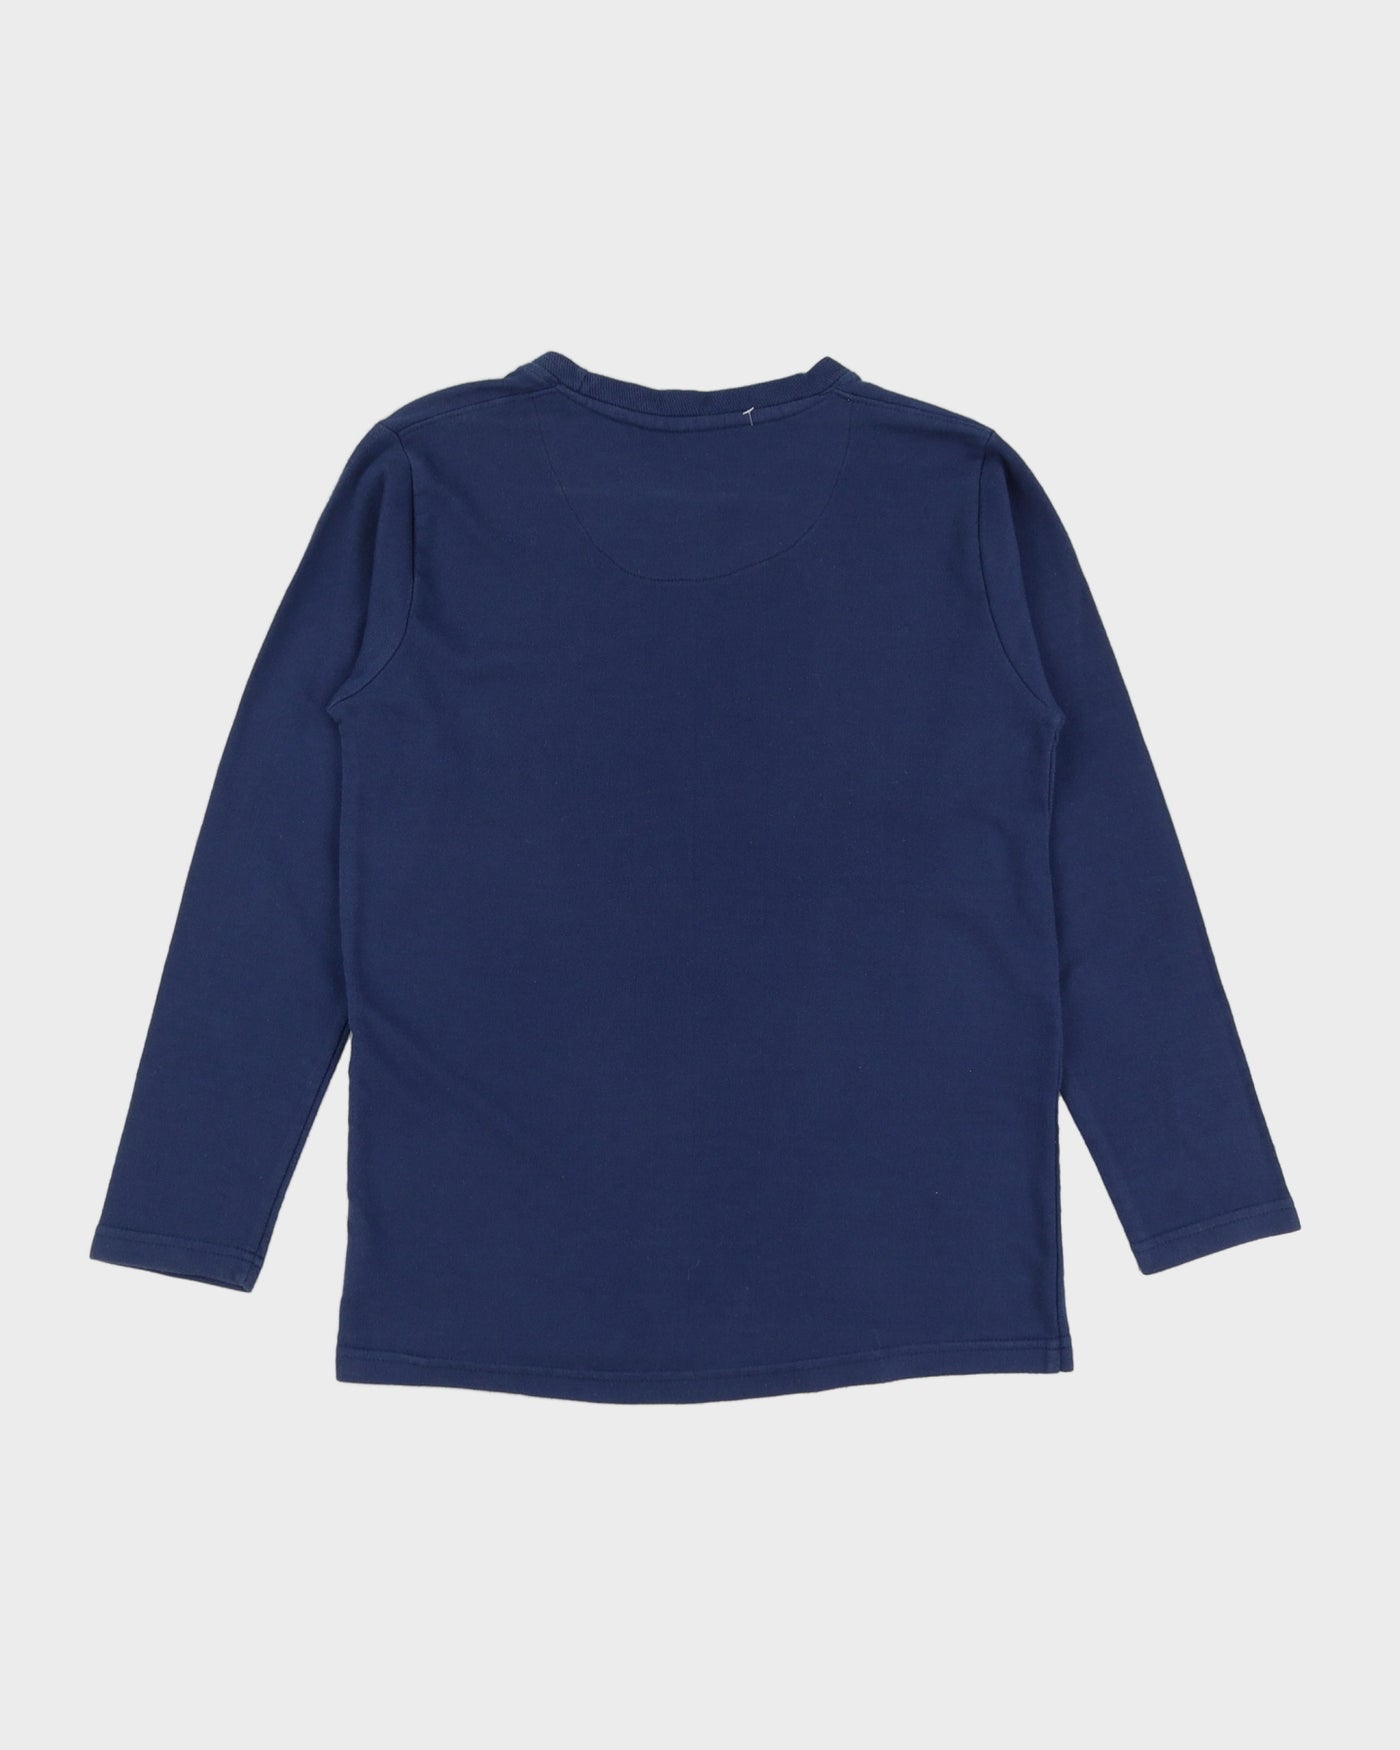 Versace Blue Sweatshirt - S